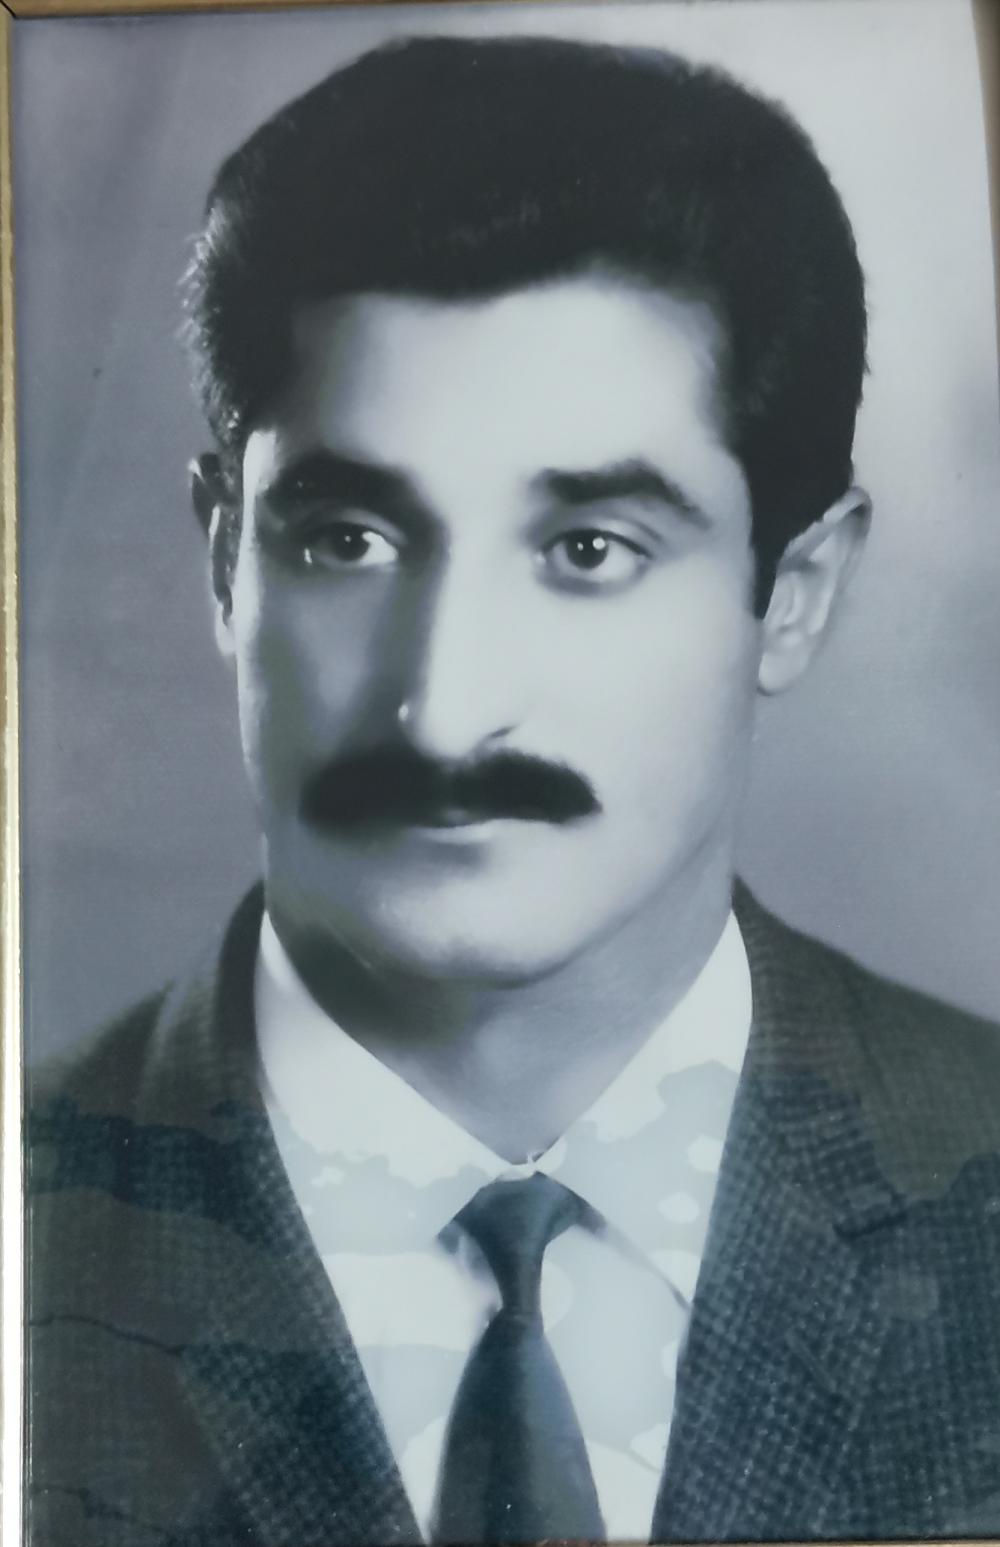 یادبود شادروان حاج رییس عبدالحسین رزمی